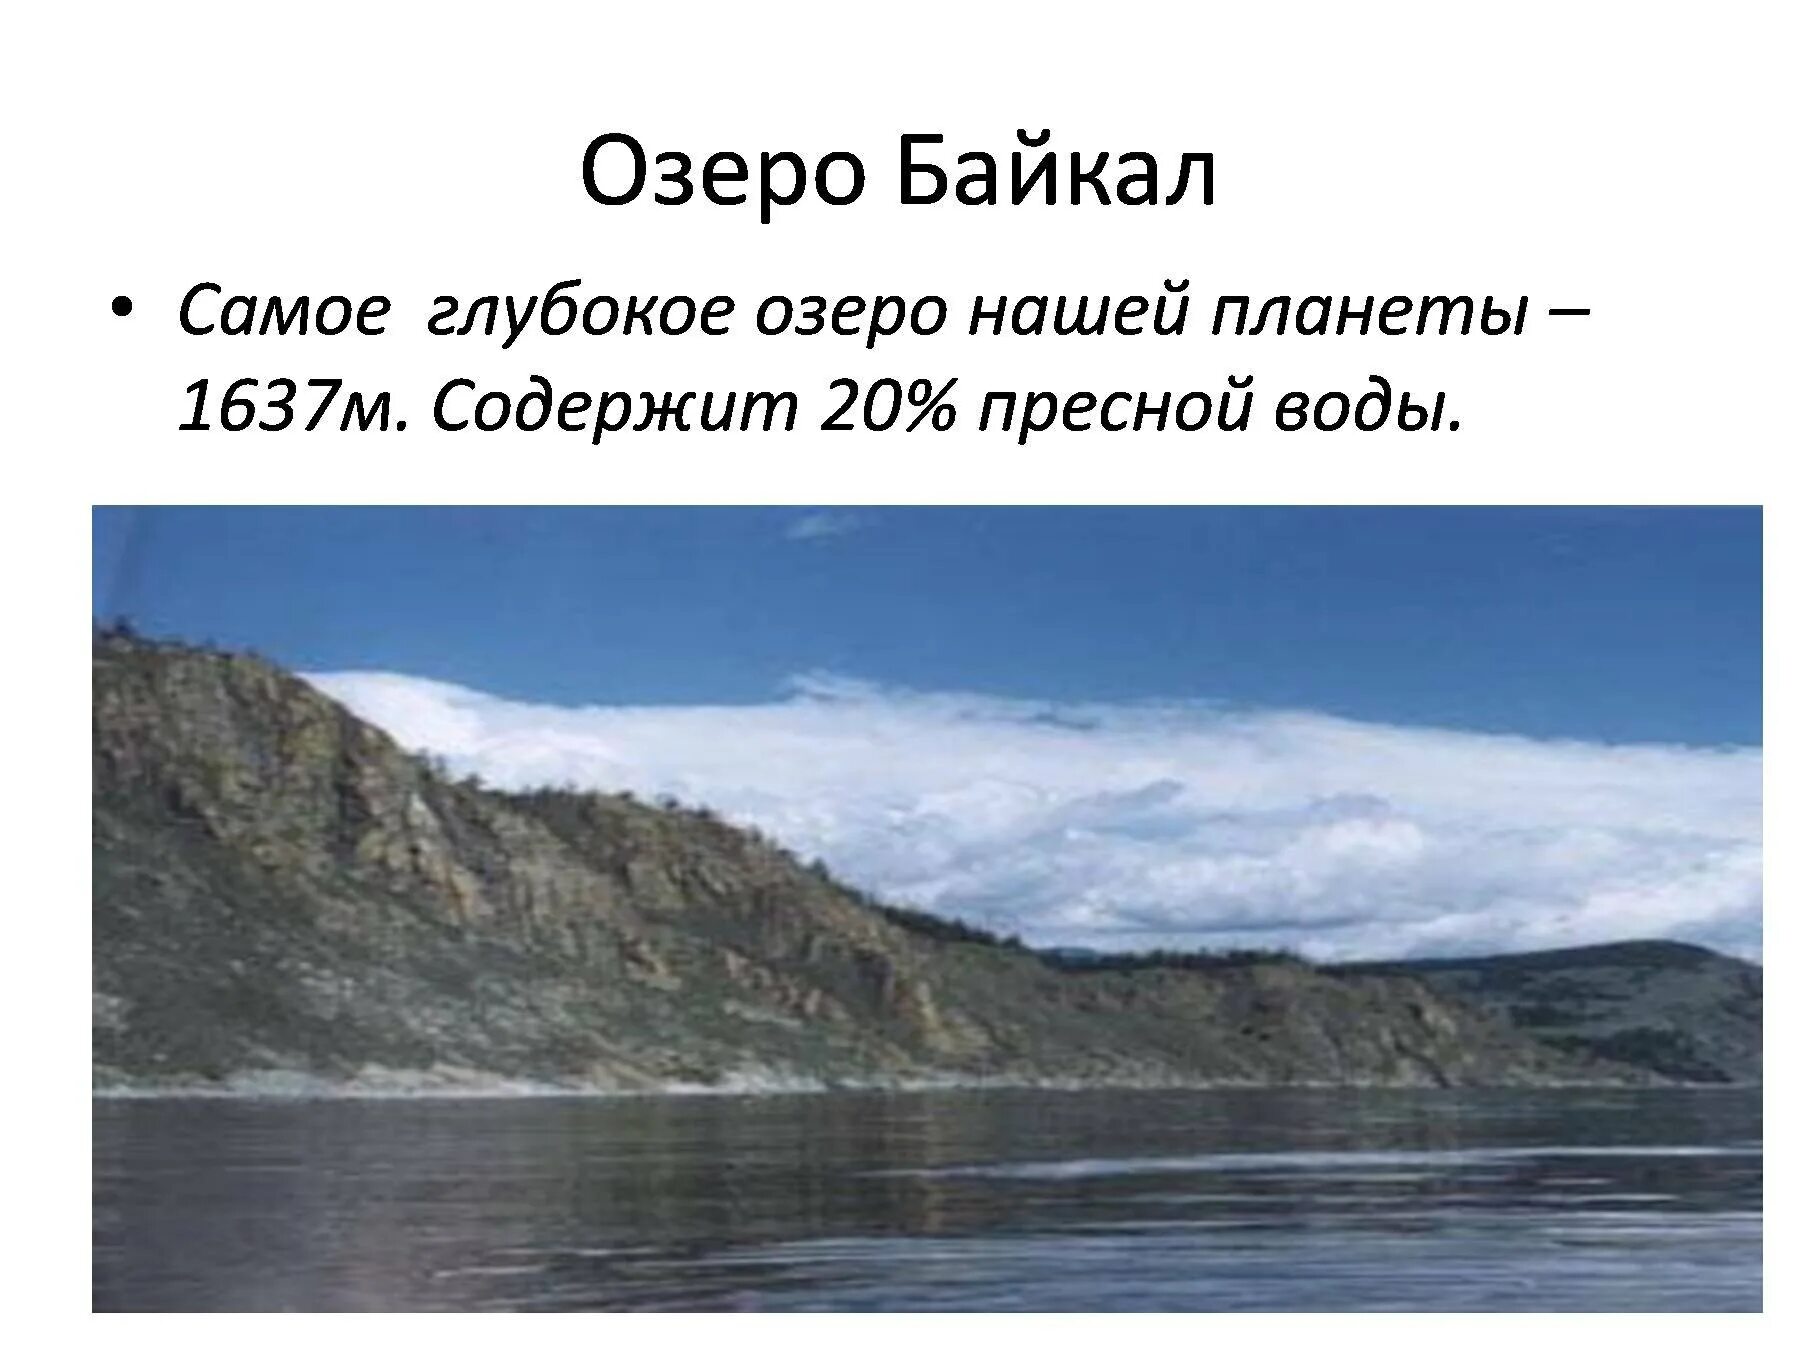 Самое глубокое озеро нашей планеты. Байкал самое глубокое. Диктант озеро Байкал. Самое глубокое озеро диктант Байкал глубочайшее озеро. Самое глубокое озеро в мире глубина байкала